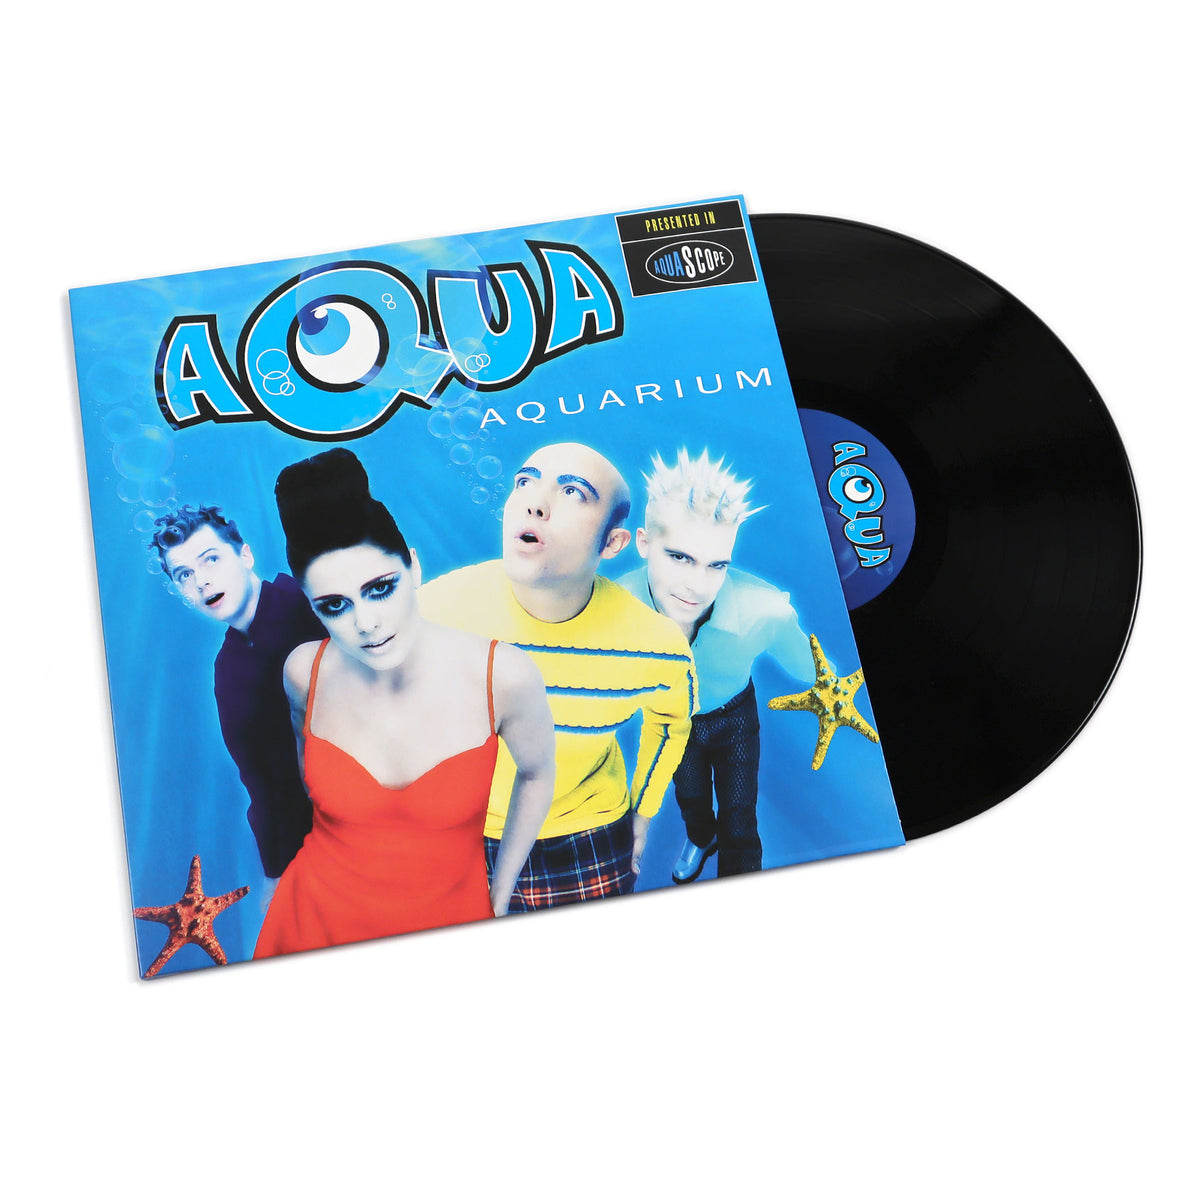 Aquarium (Barbie Girl, 180g) Vinyl — TurntableLab.com